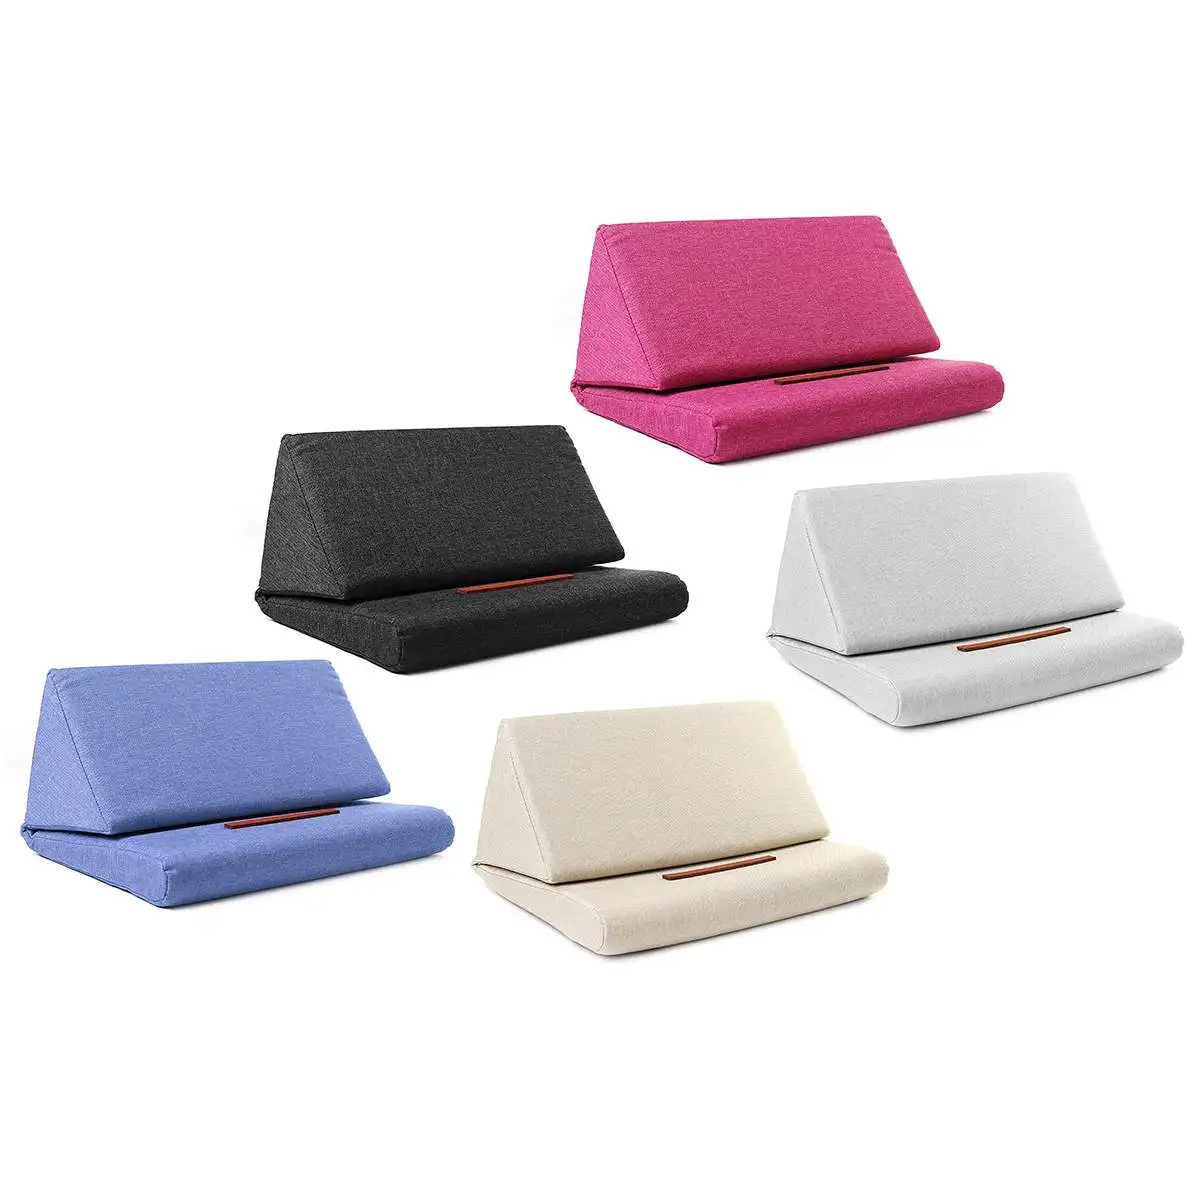 Многофункциональная подушка для ноутбука с держателем, цветная Подставка для планшета, подушка из полиэстера, подставка для чтения ПК, подушка для ipad